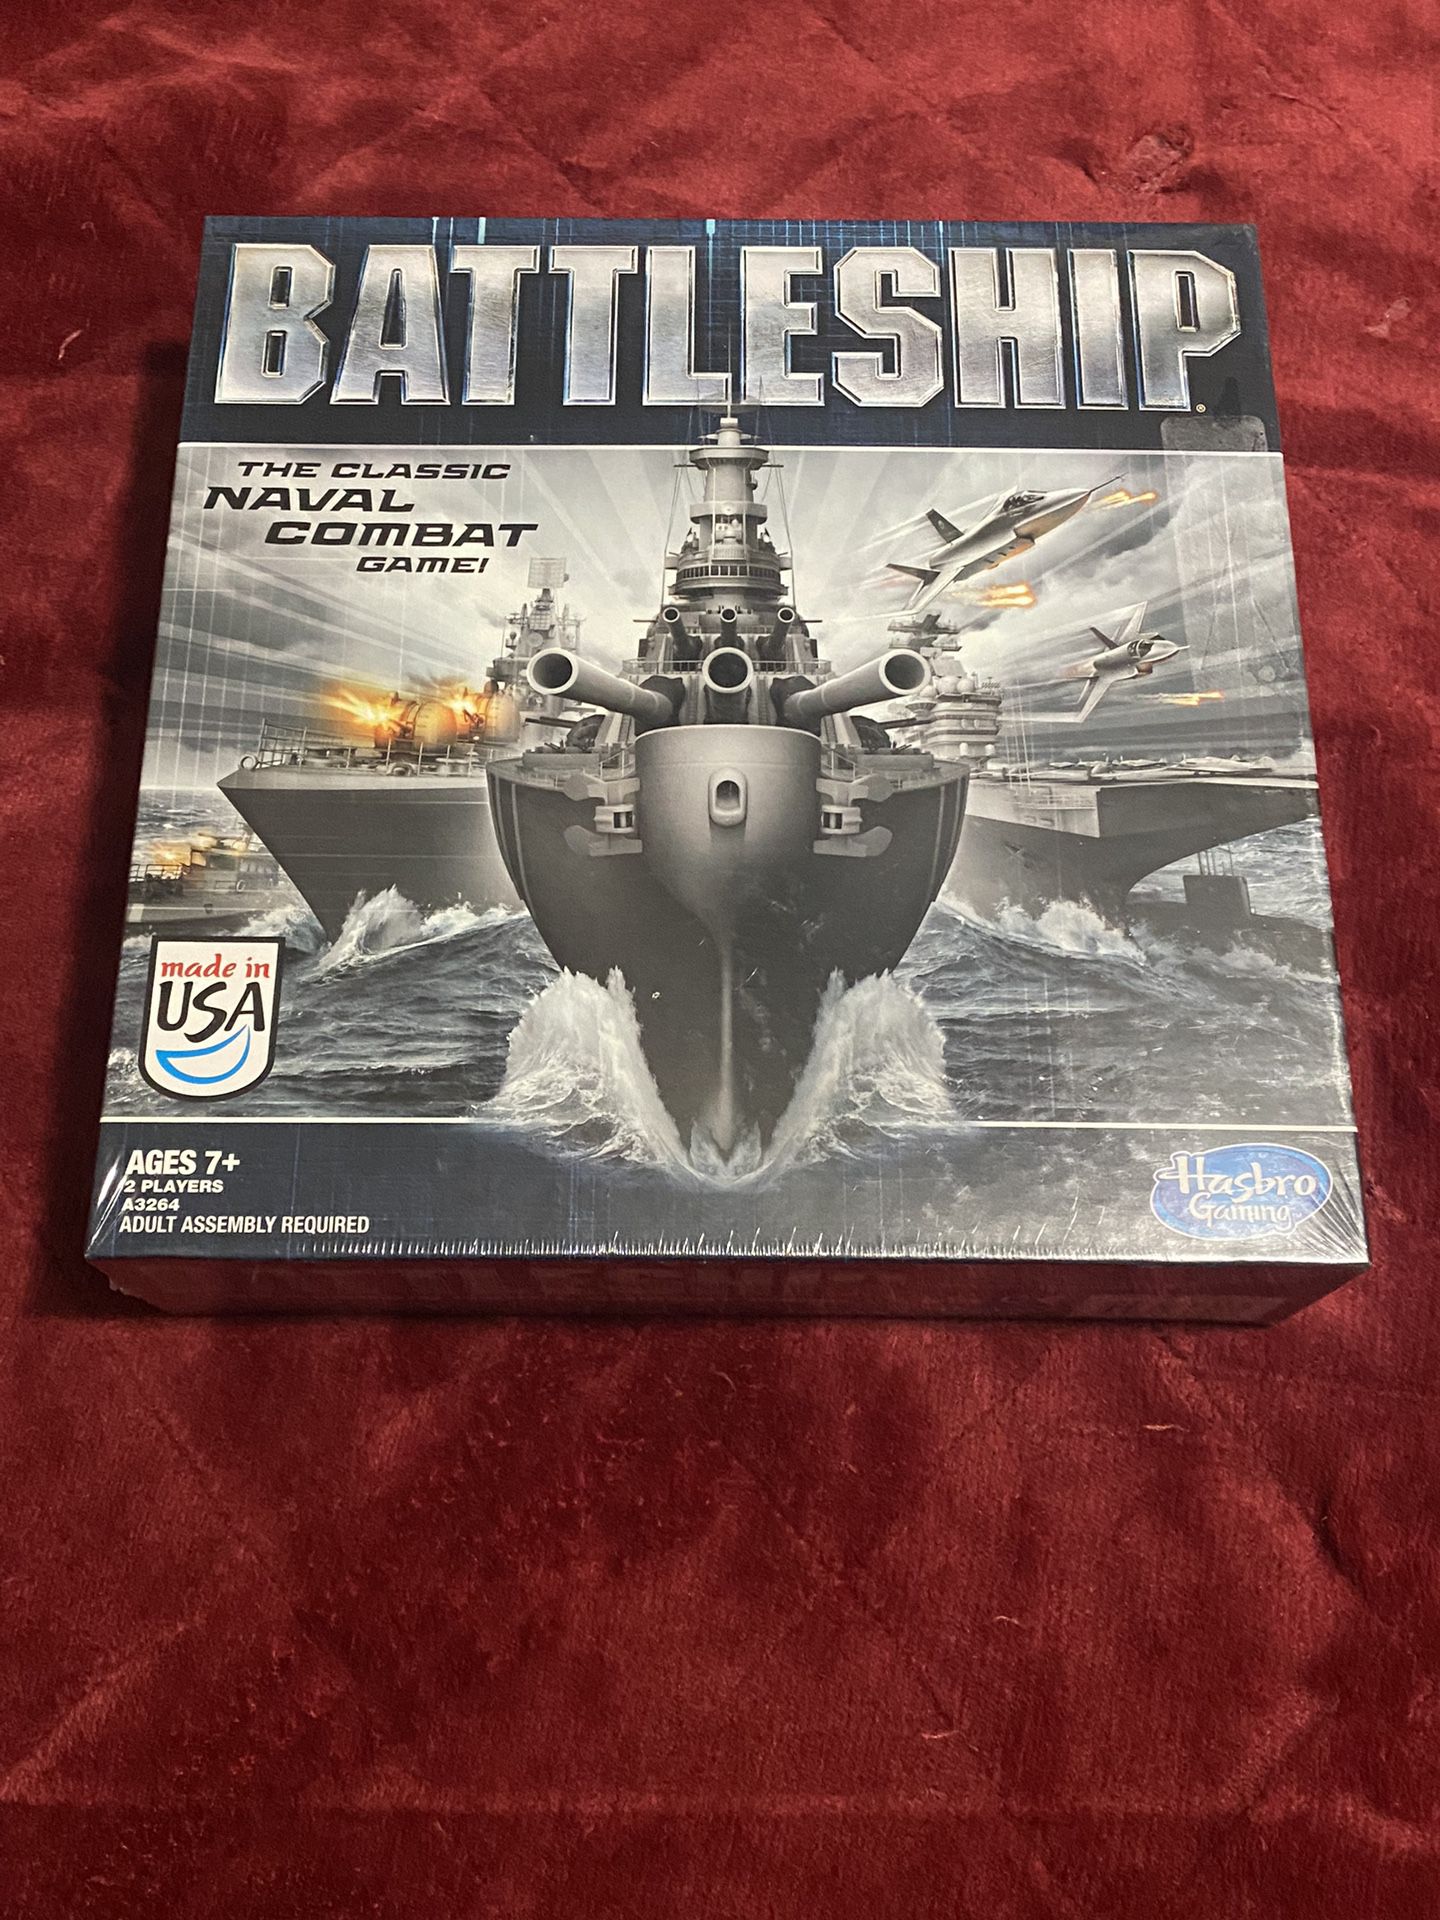 Battle Ship Game Board